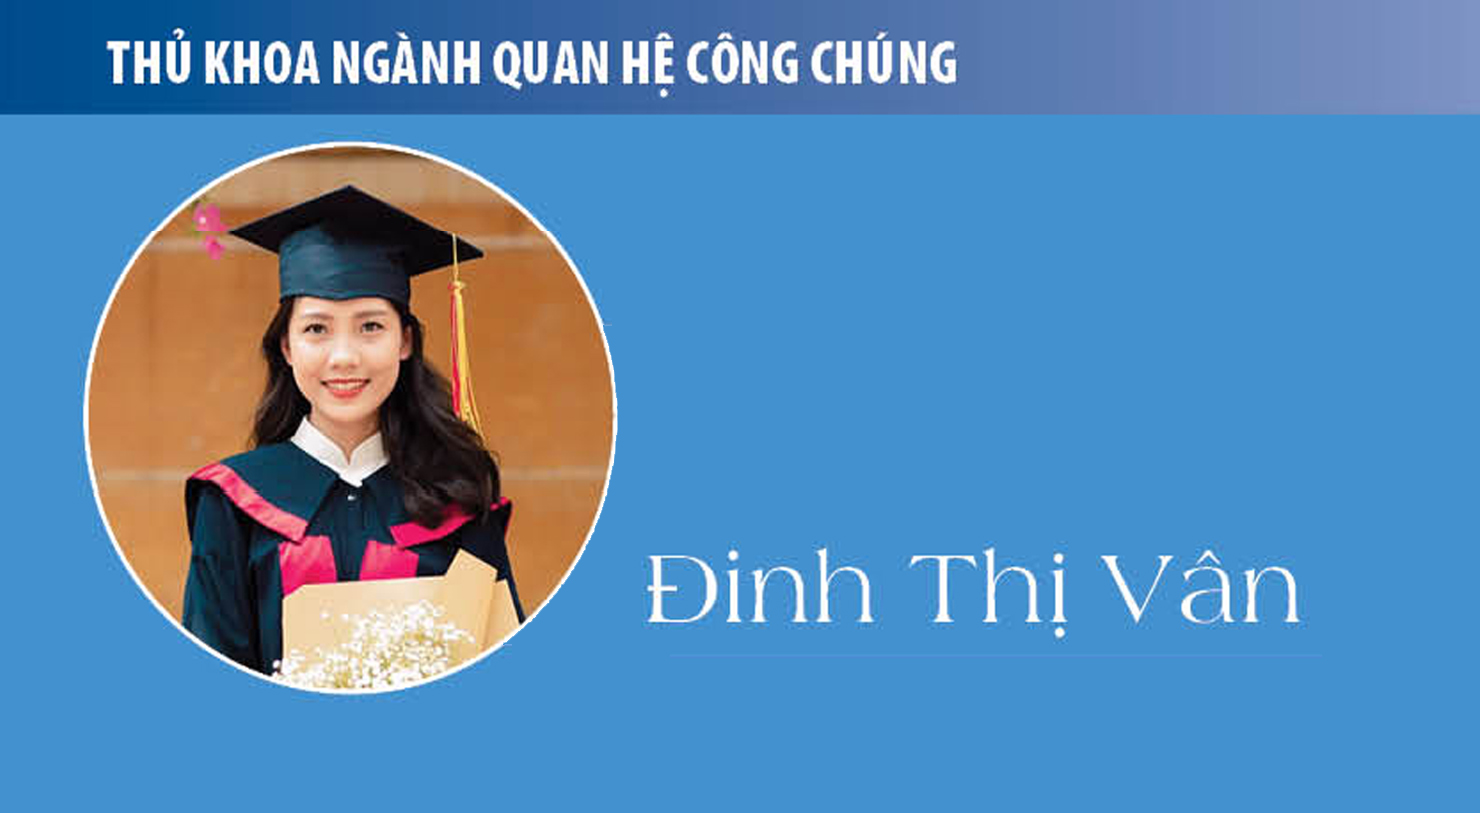 Thủ khoa Đinh Thị Vân (Quan hệ công chúng): PR đã thay đổi tôi!